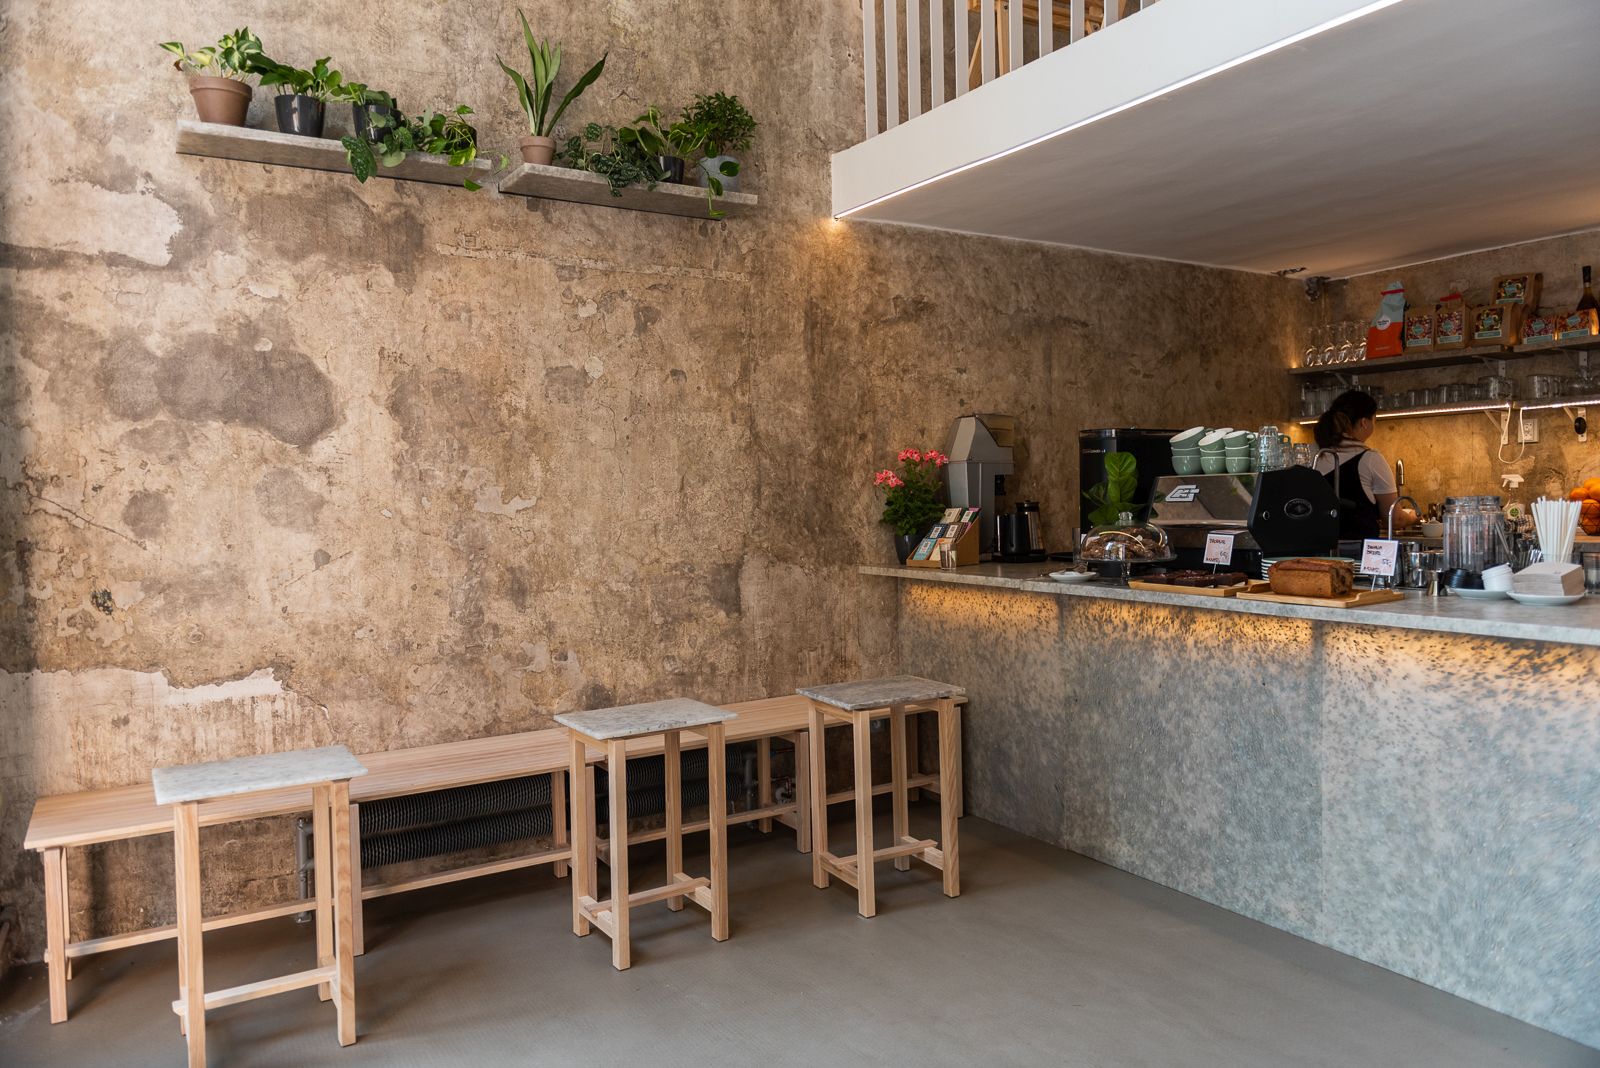 Espresso bar Punkt v Brne má nábytok z recyklovaného materiálu od Plastic guys. 